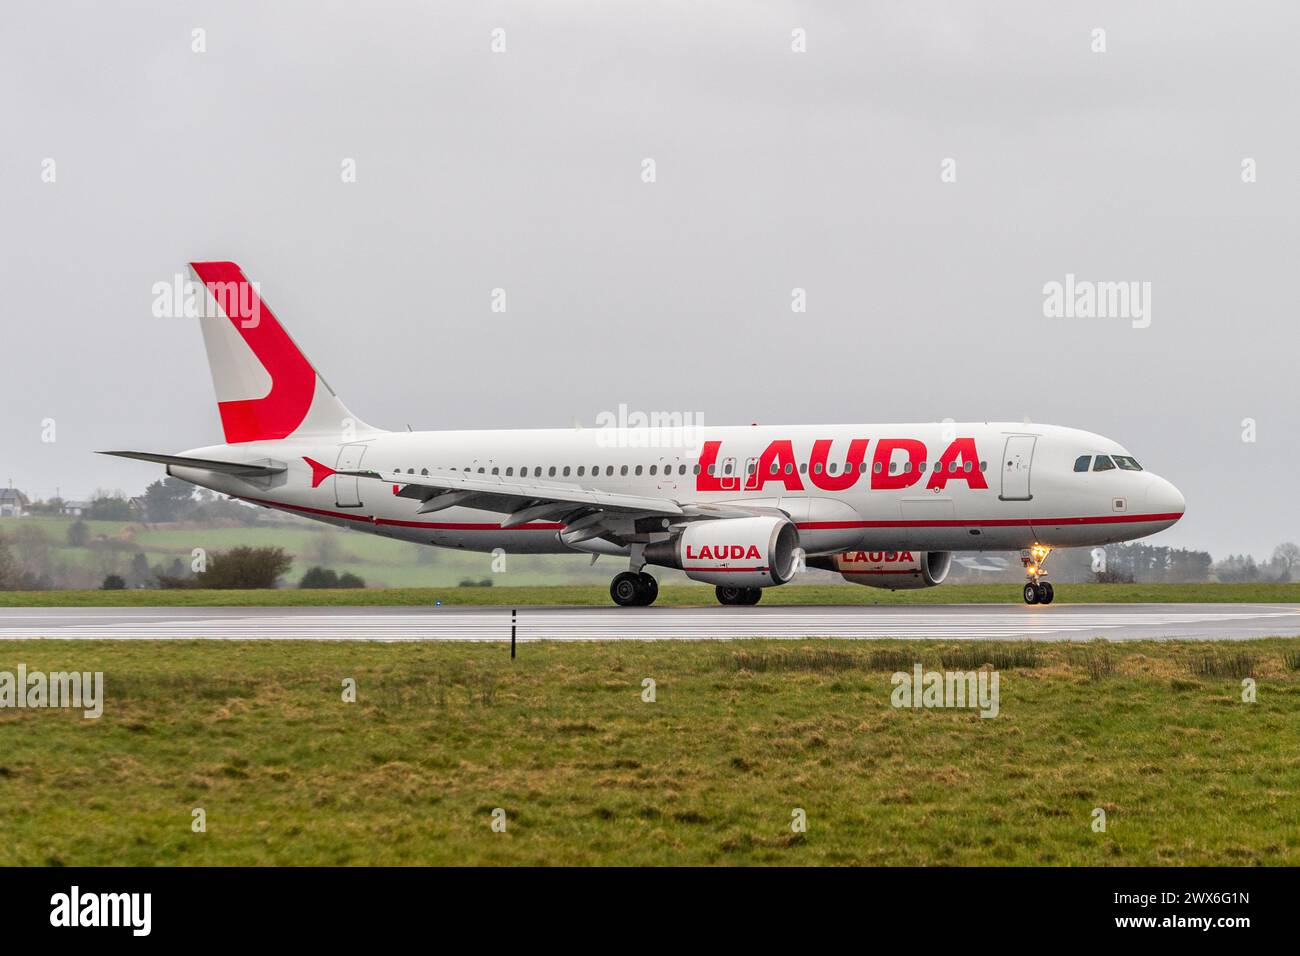 Lauda Air Airbus A320-214 circulant sur la piste de l'aéroport de Cork, Cork, Irlande. Banque D'Images